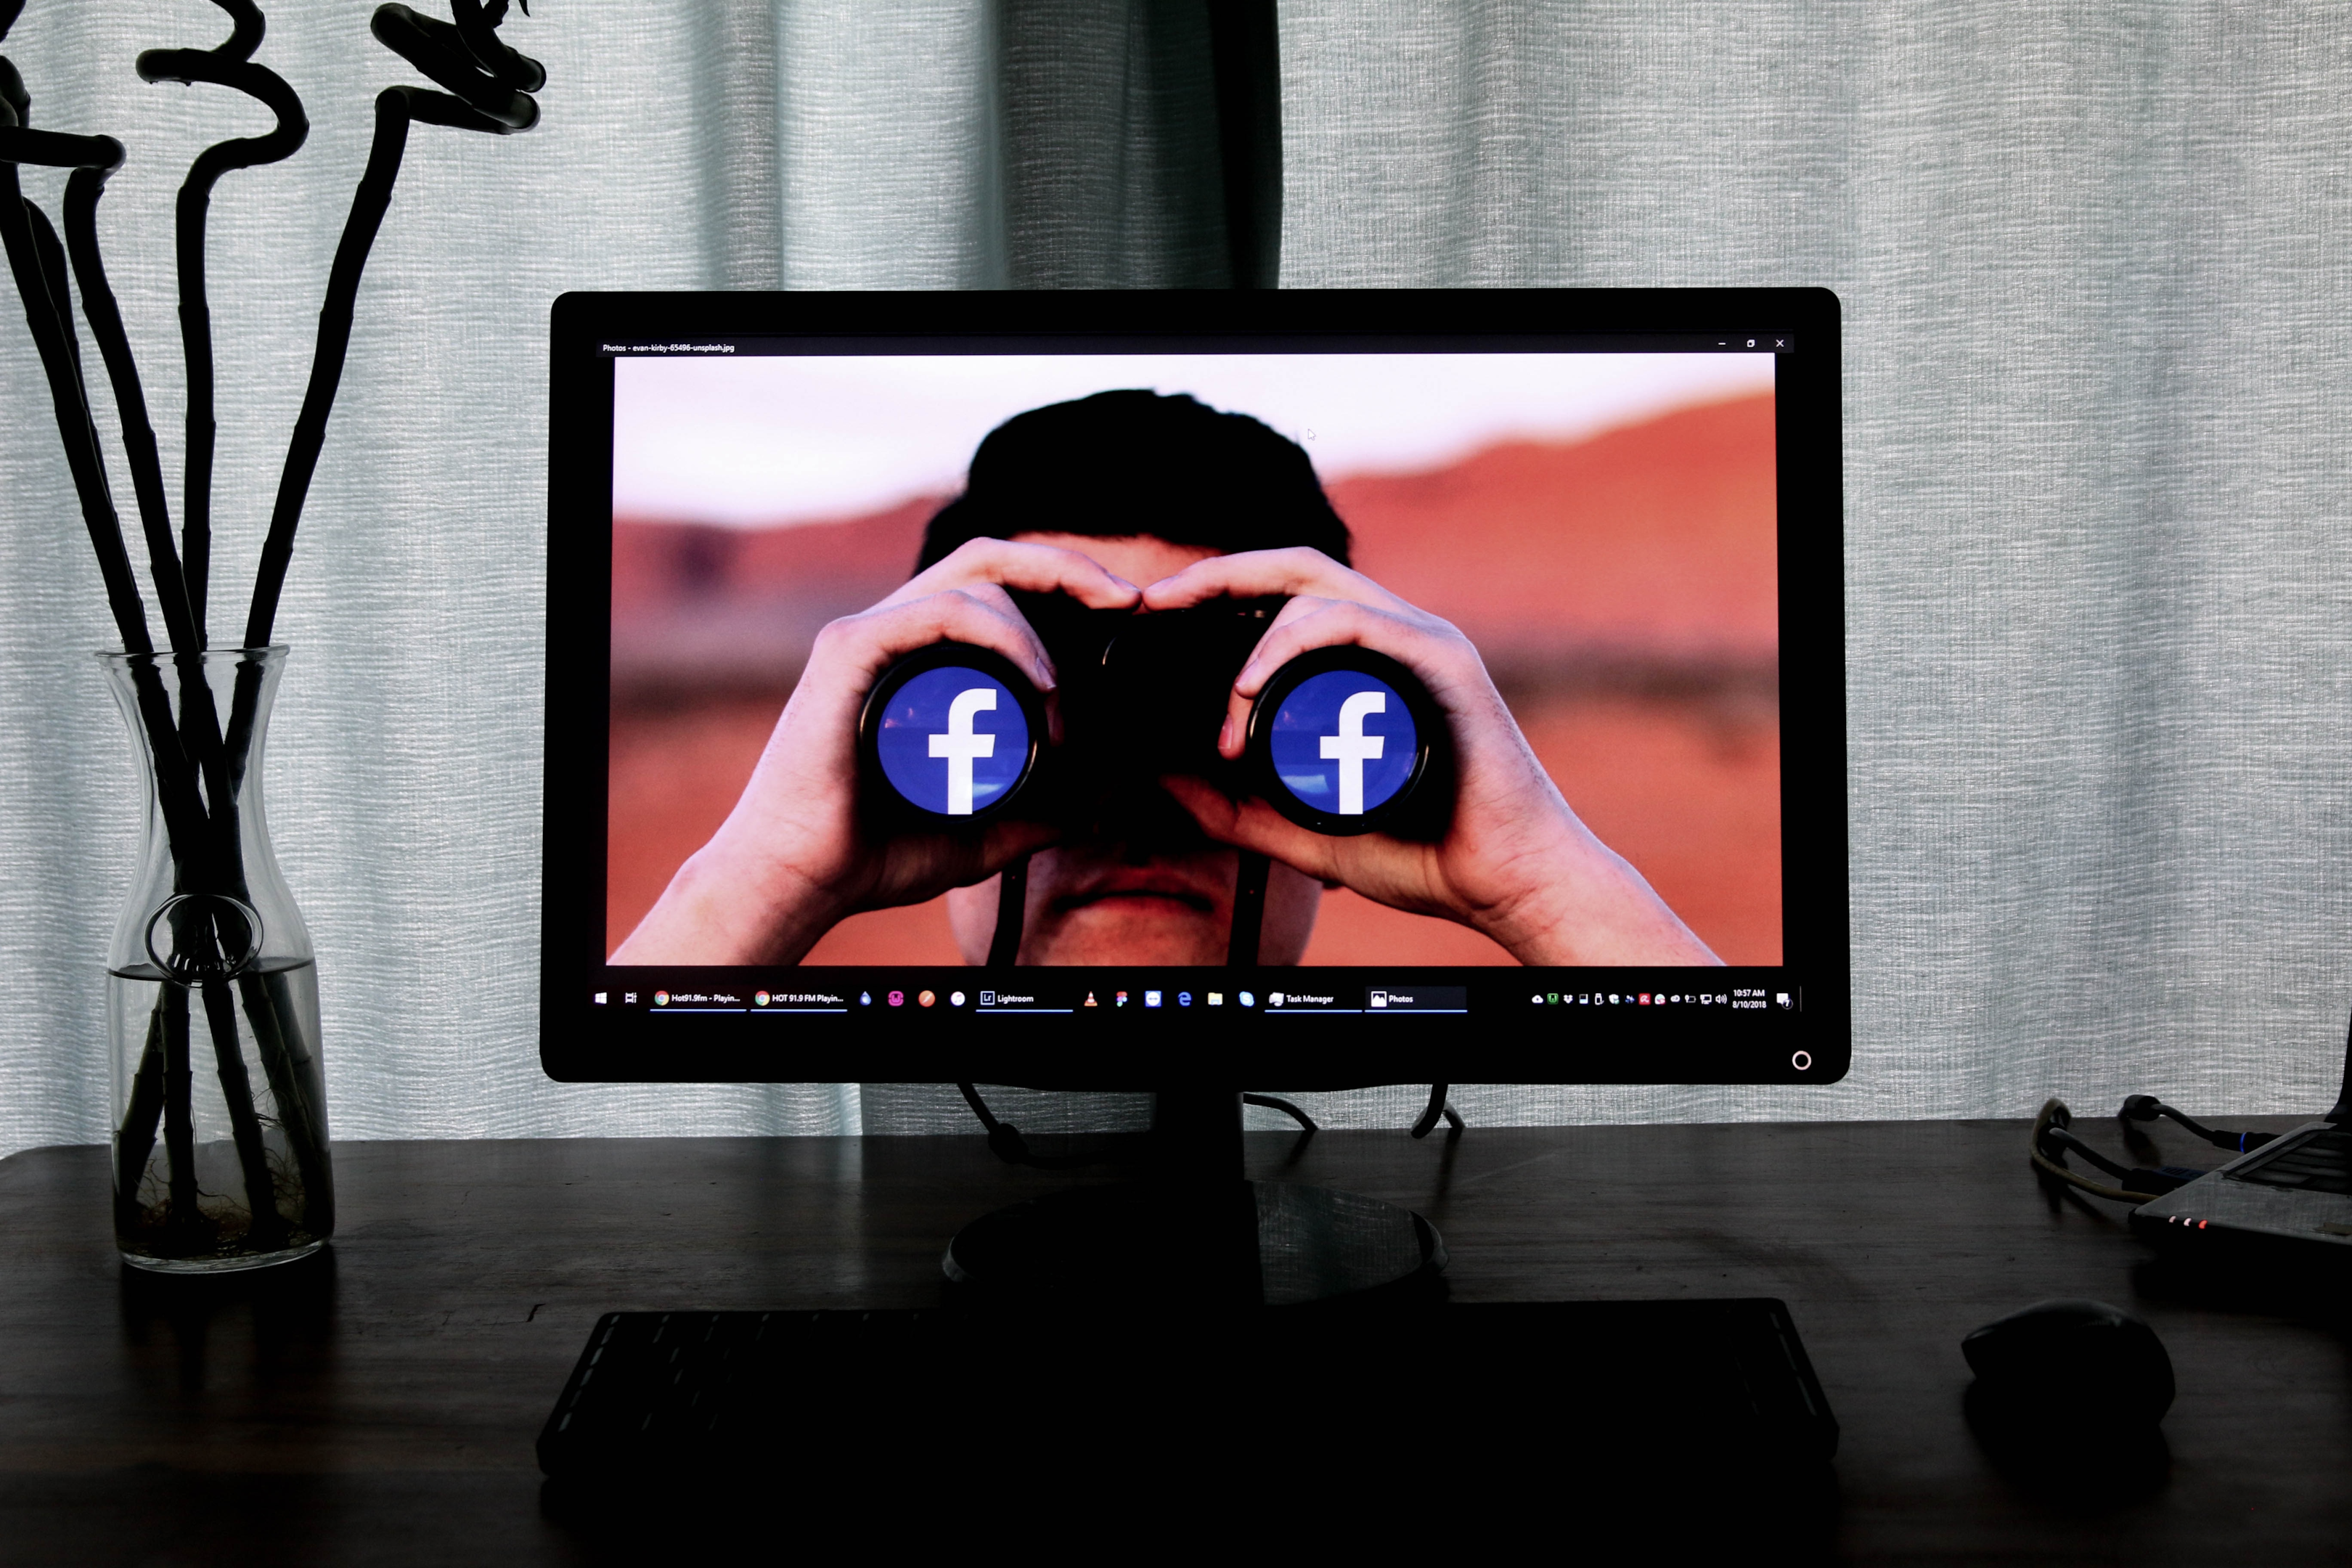 Facebook marketing privacy concerns